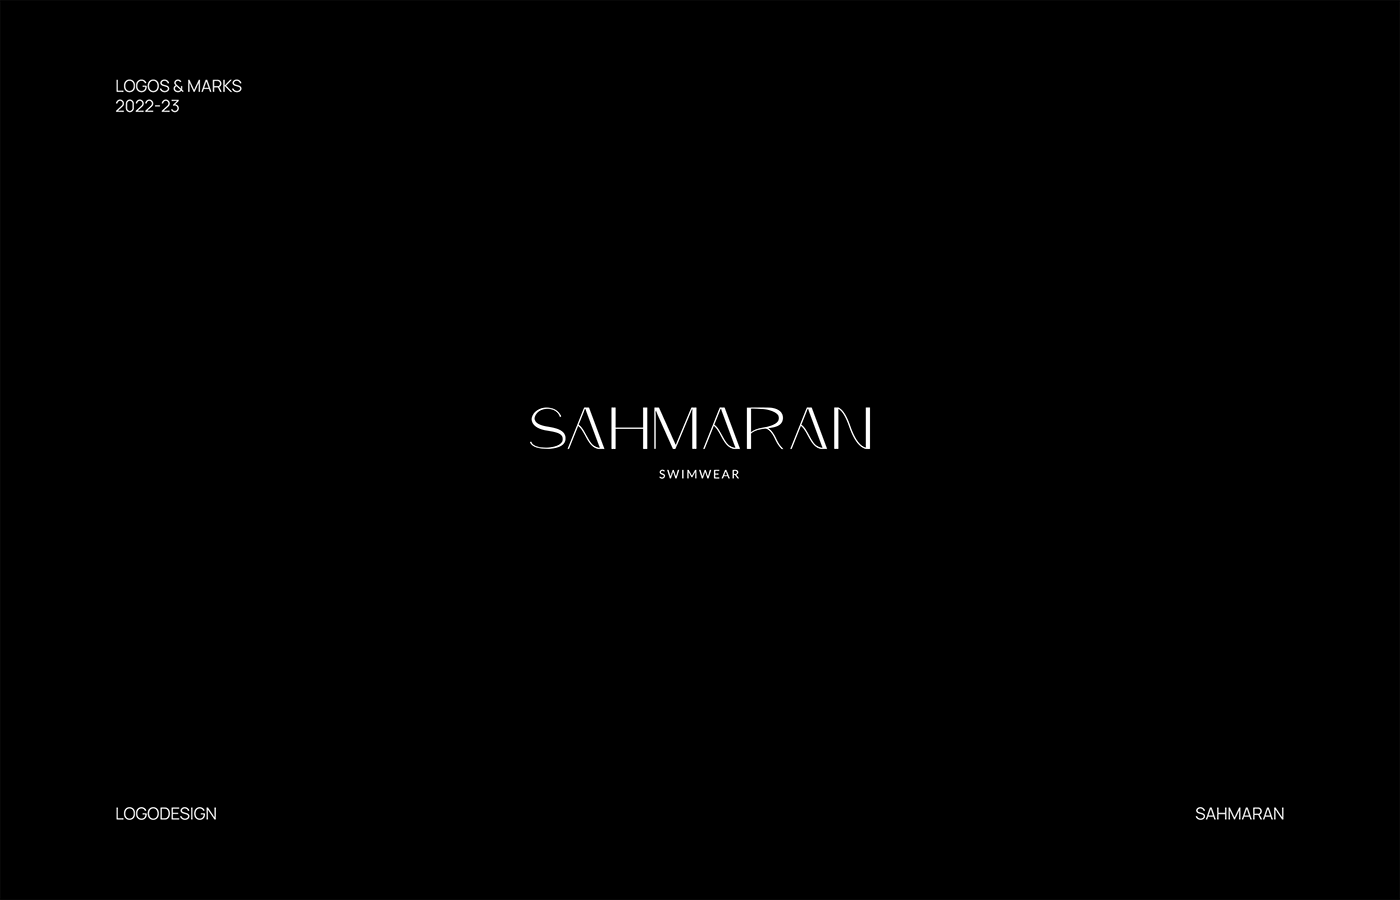 Sahmaran - logo for swimwear brand